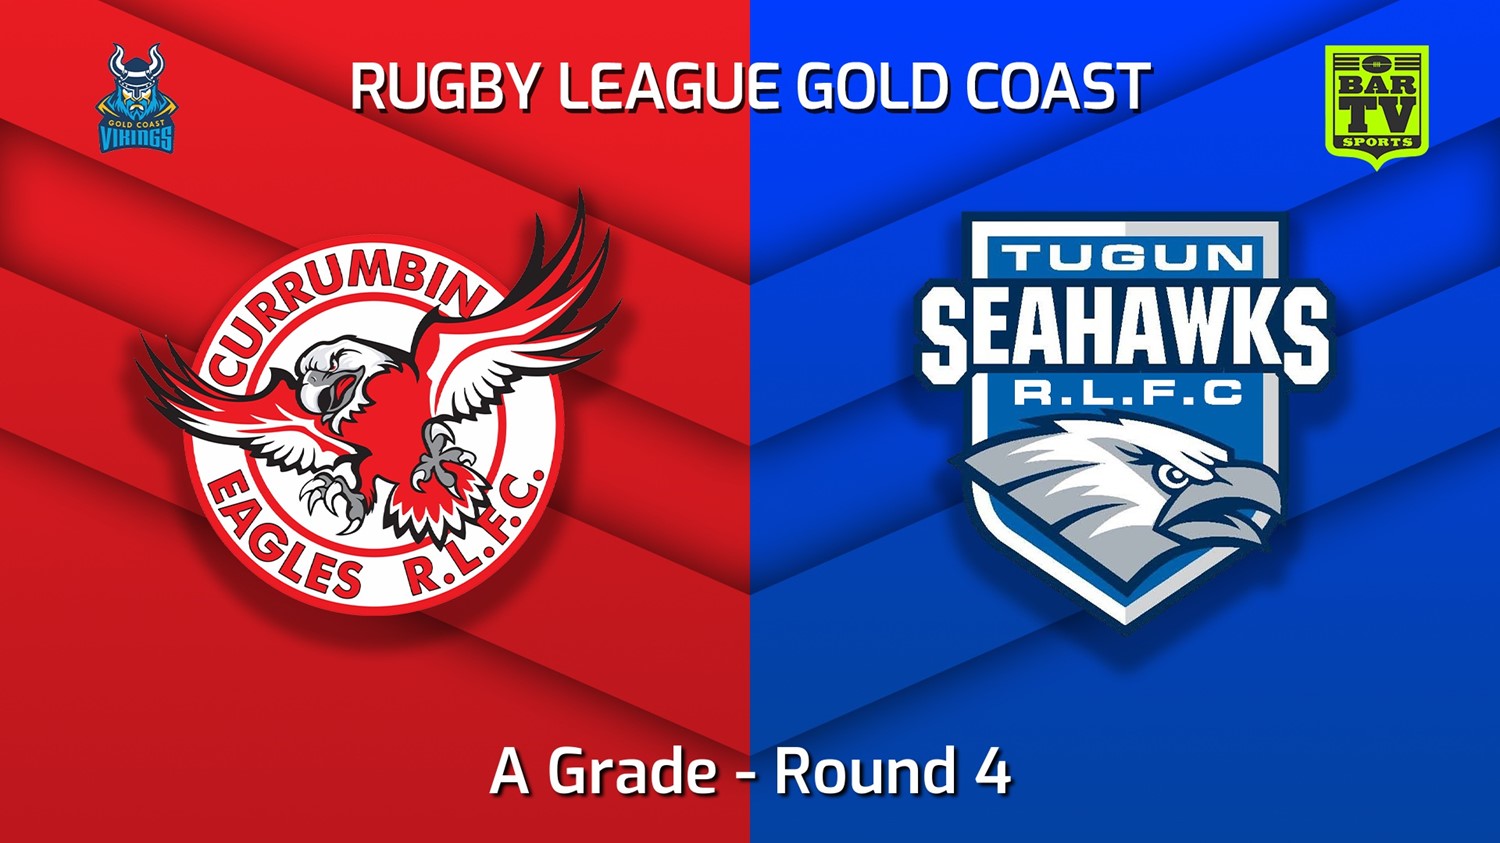 220424-Gold Coast Round 4 - A Grade - Currumbin Eagles v Tugun Seahawks Slate Image